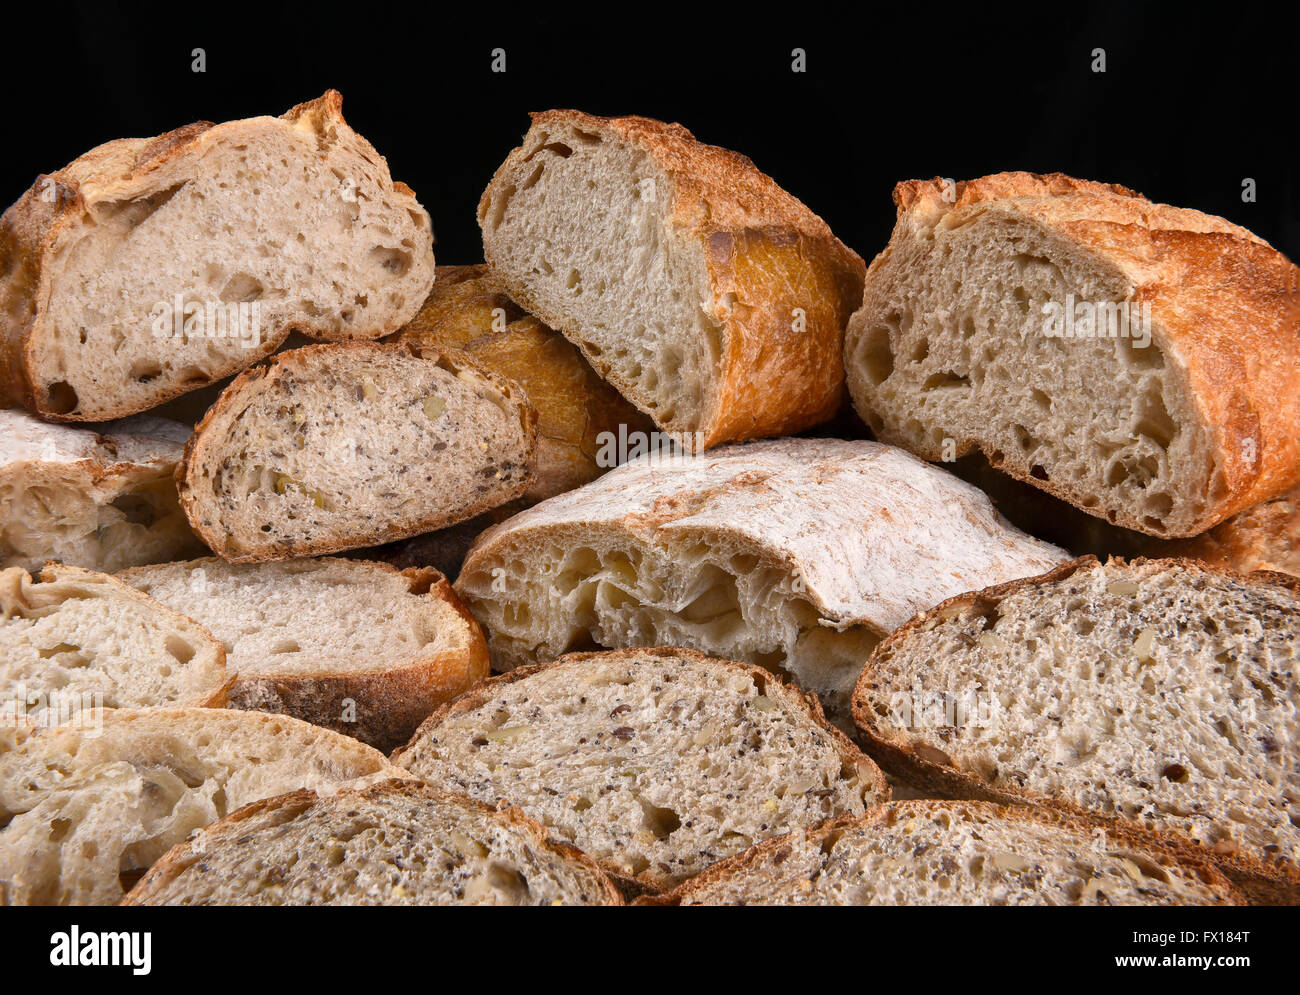 Eine Vielzahl von frisch gebackenen Brote, die Brote sind halbieren und in Scheiben geschnitten. Stockfoto